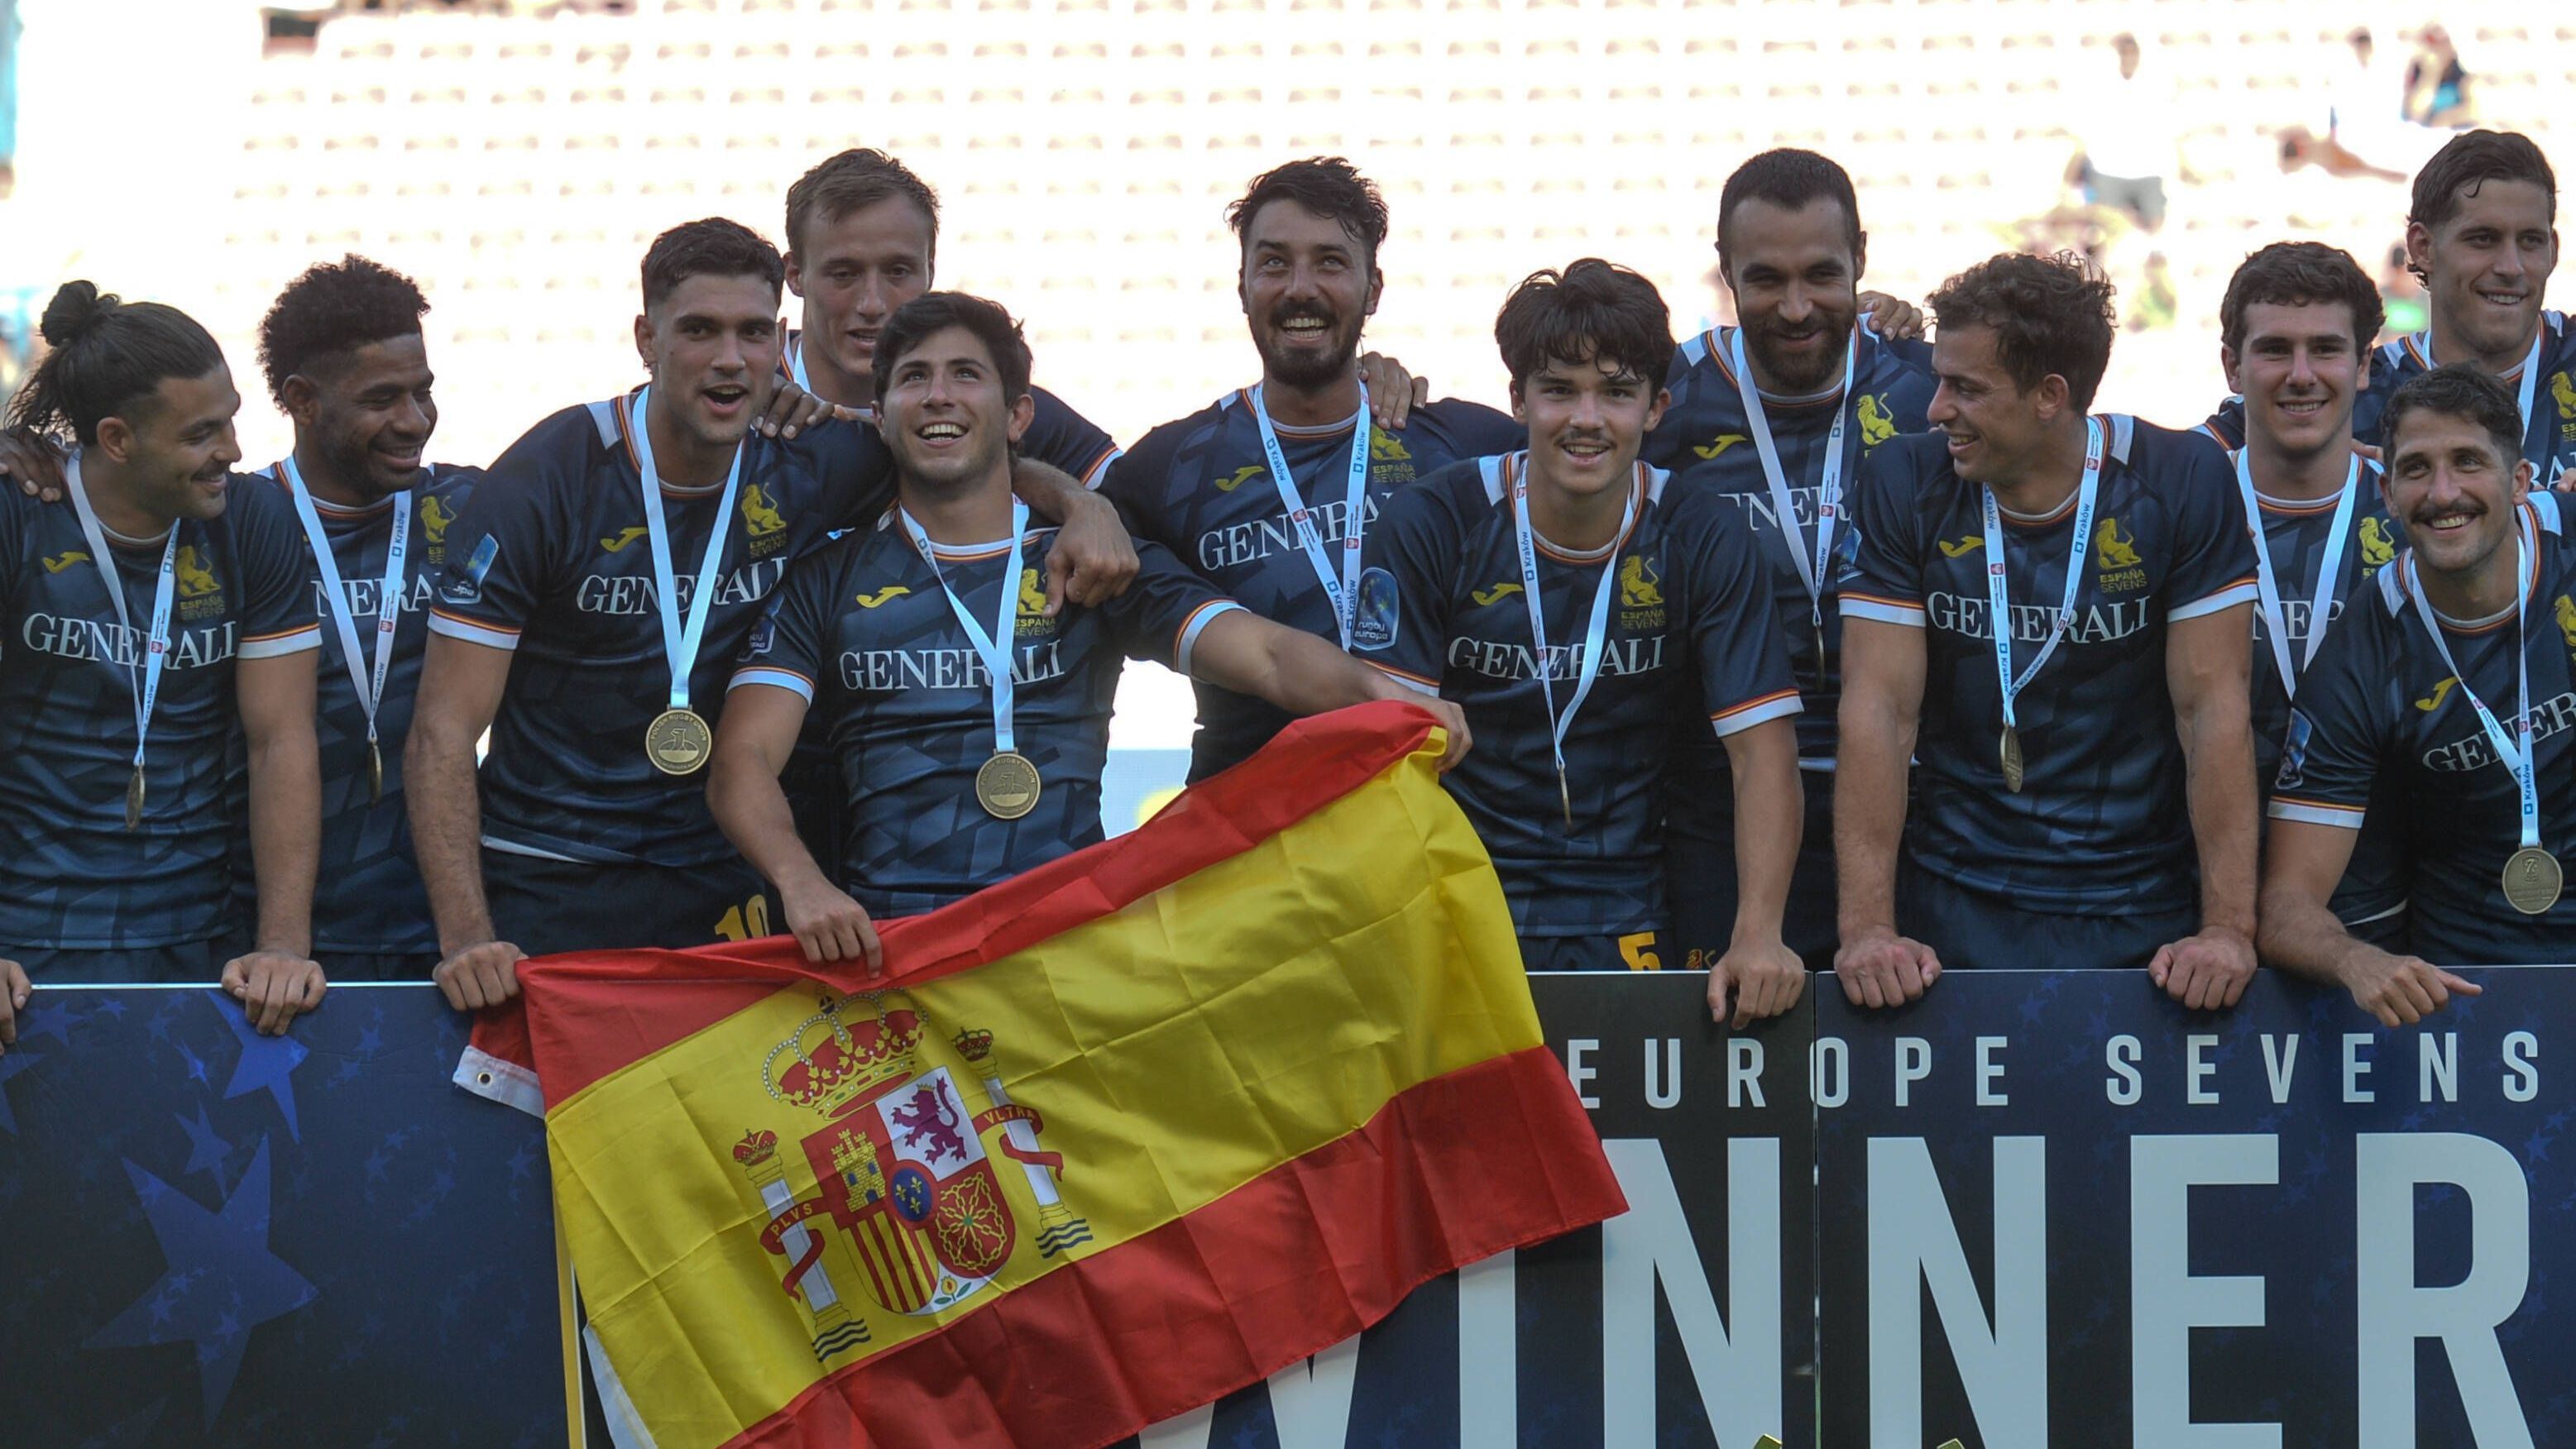 <strong>Platz 3: Spanien</strong><br>Nachdem sie zweimal am grünen Tisch die WM-Qualifikation verpasst haben, wollen die Spanier 2031 unbedingt bei der&nbsp;Rugby-Union-Weltmeisterschaft&nbsp;dabei sein. Mit neuem Trainer und verjüngter Mannschaft werden sie 2024 nutzen, um die Qualität der Spieler aus der spanischen Liga zu testen. In diesem Jahr des Umbruchs reicht es für die Spanier für Platz 3.